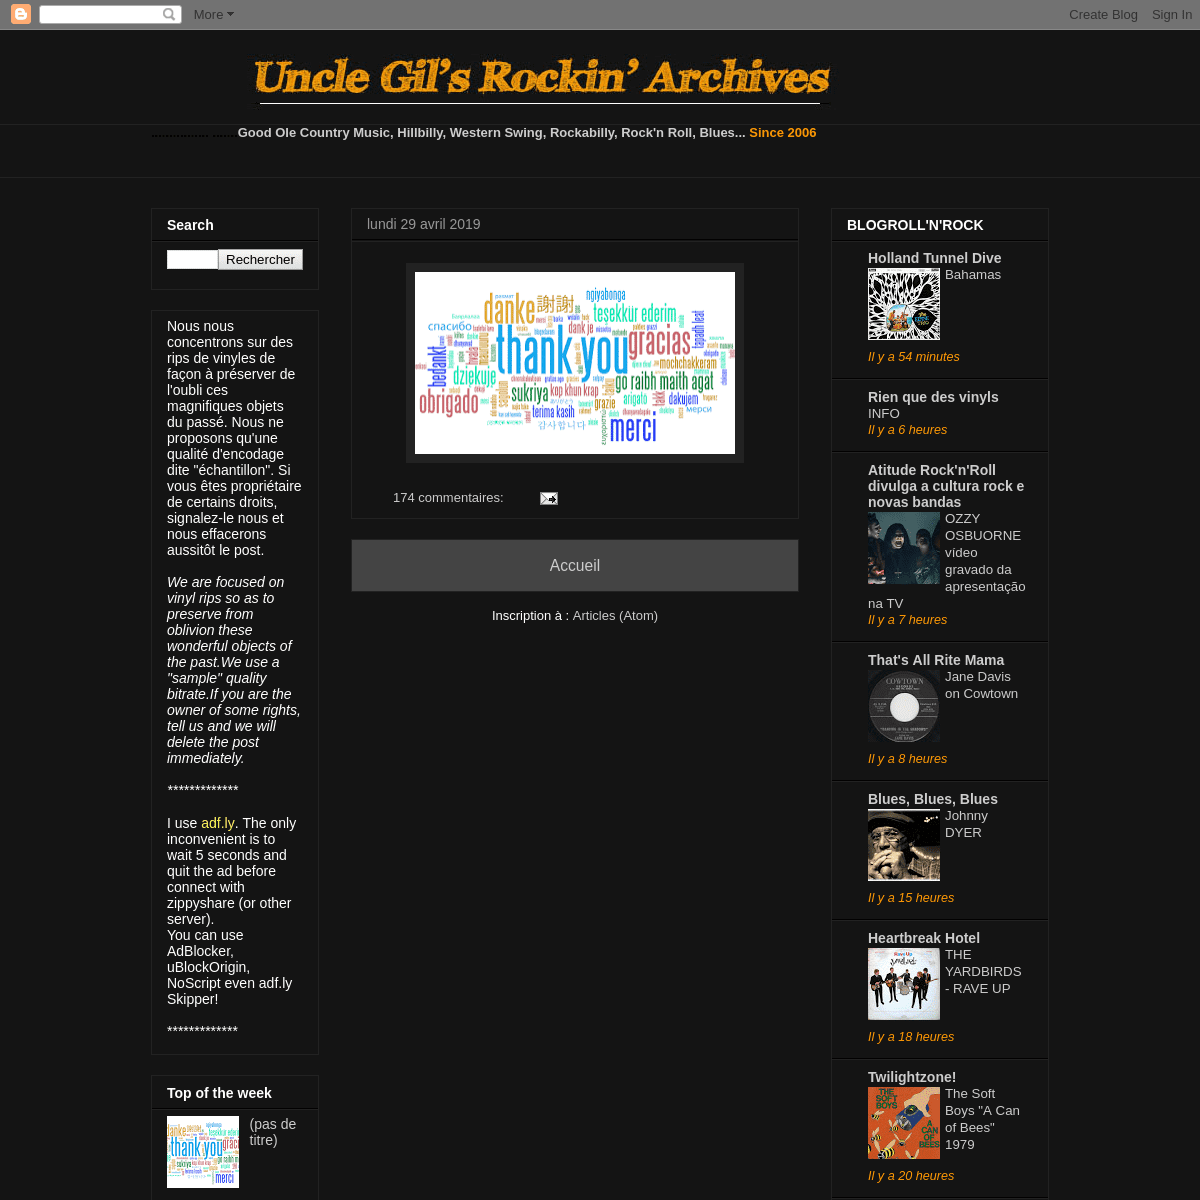 A complete backup of unclegil.blogspot.com